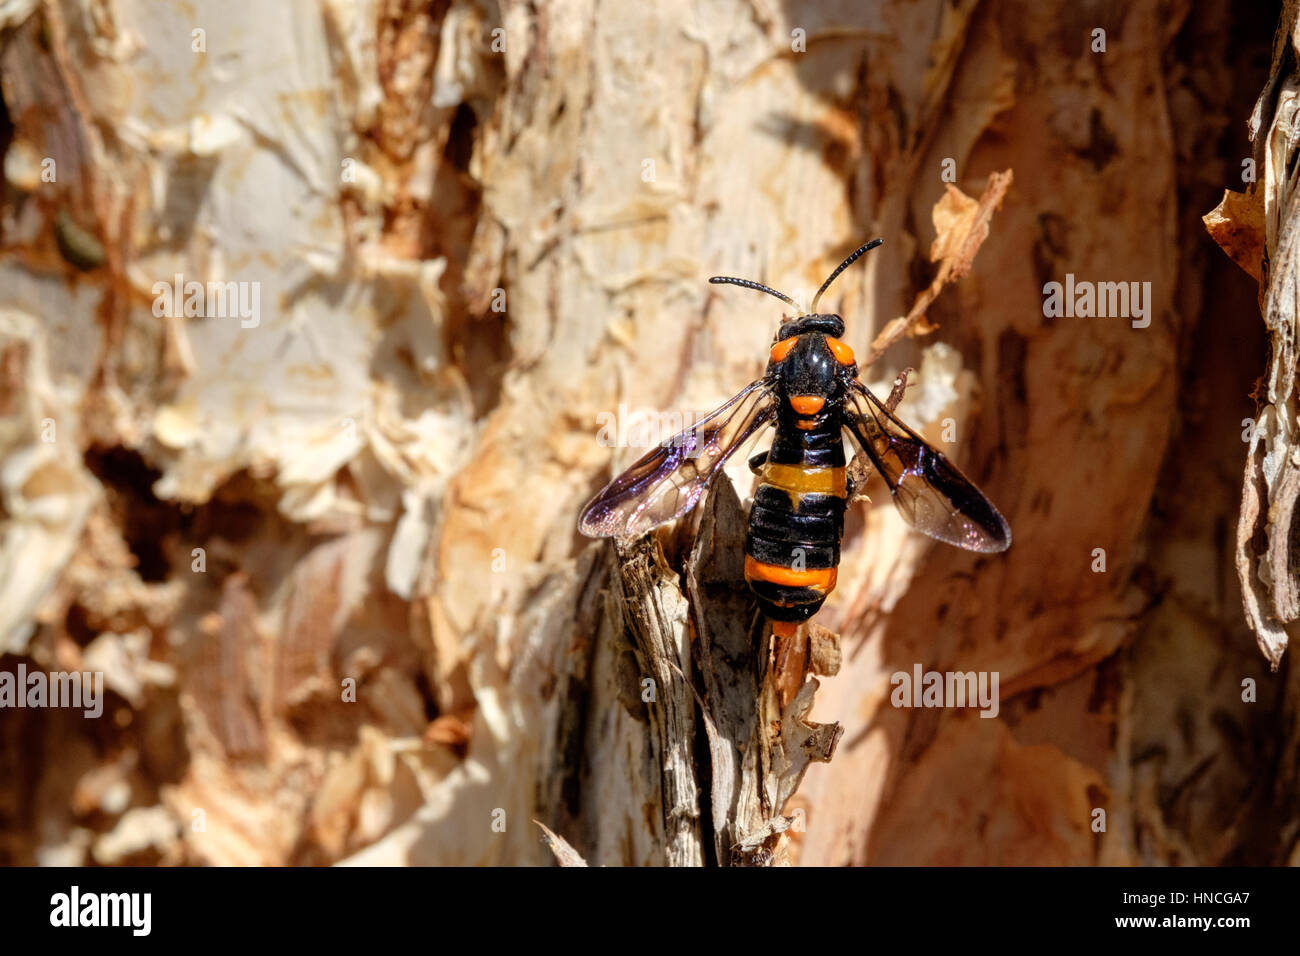 Un adulte malaleuca (Lyphrotoma zonalis) perché sur le tronc d'un arbuste, Melbourne, Australie. Banque D'Images